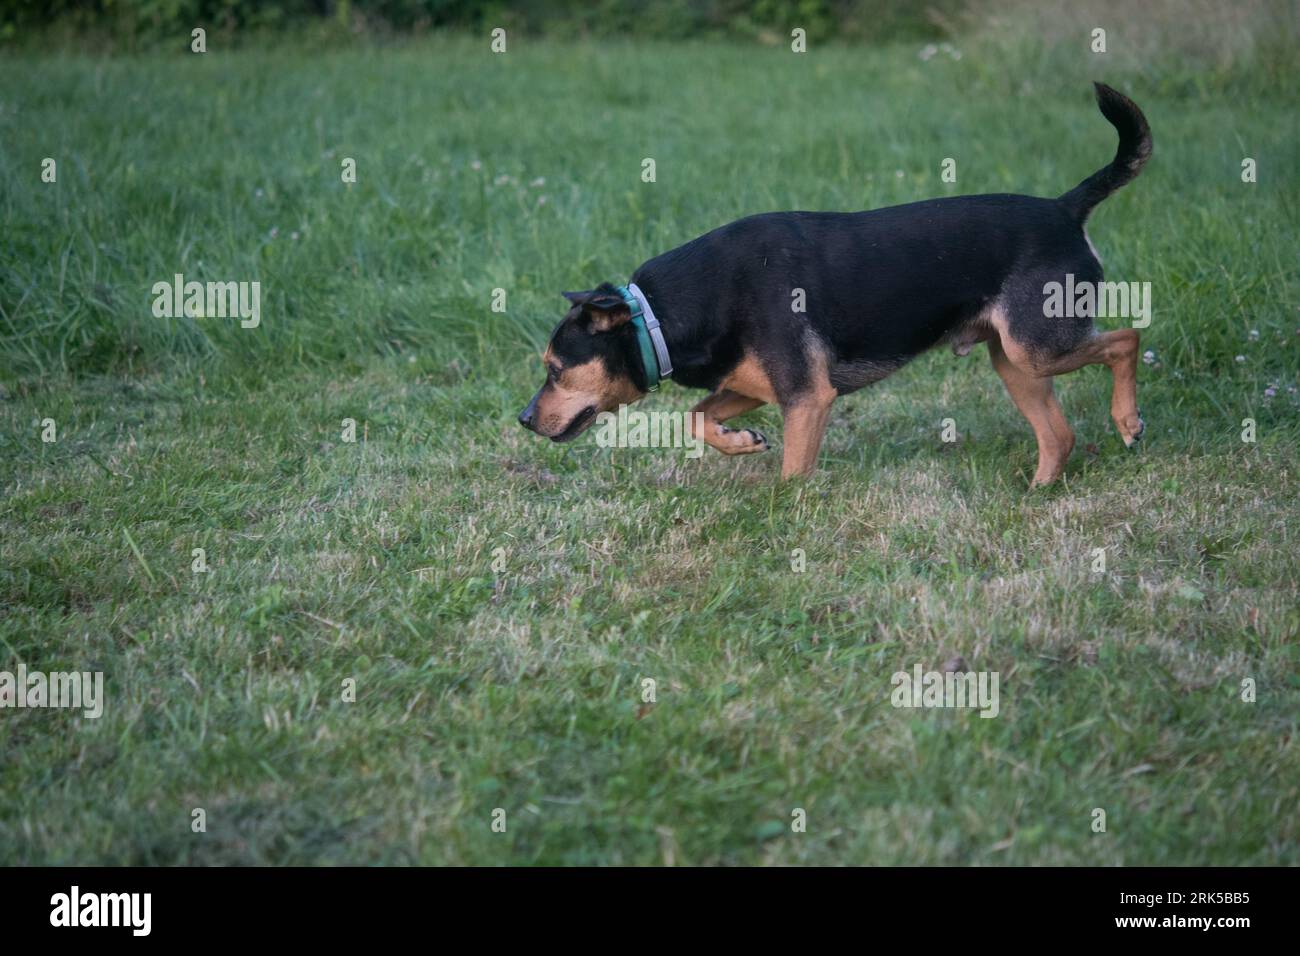 Rottweiler ressemble à chien d'accueil s'amusant dans la cour Banque D'Images